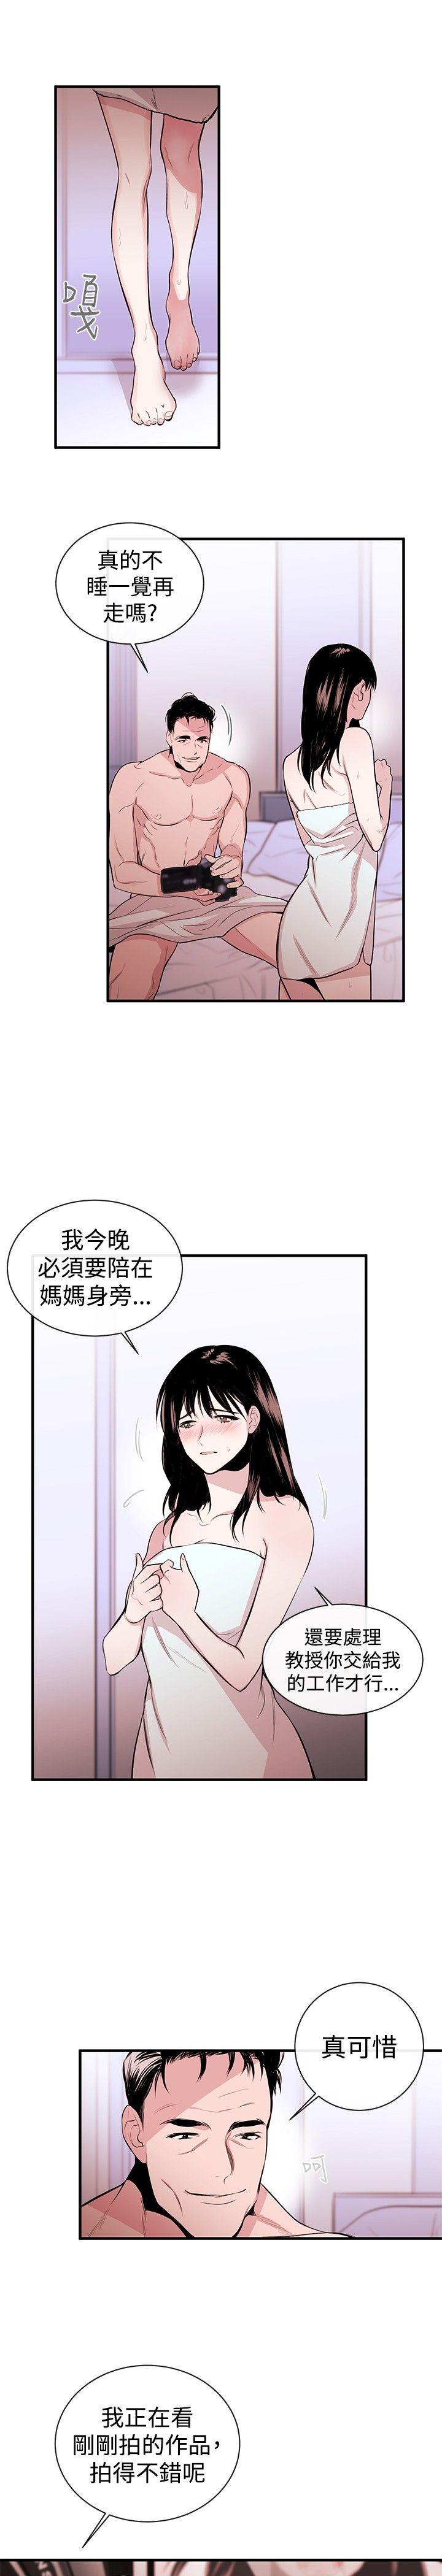 韩国污漫画 女助教 第2话 20